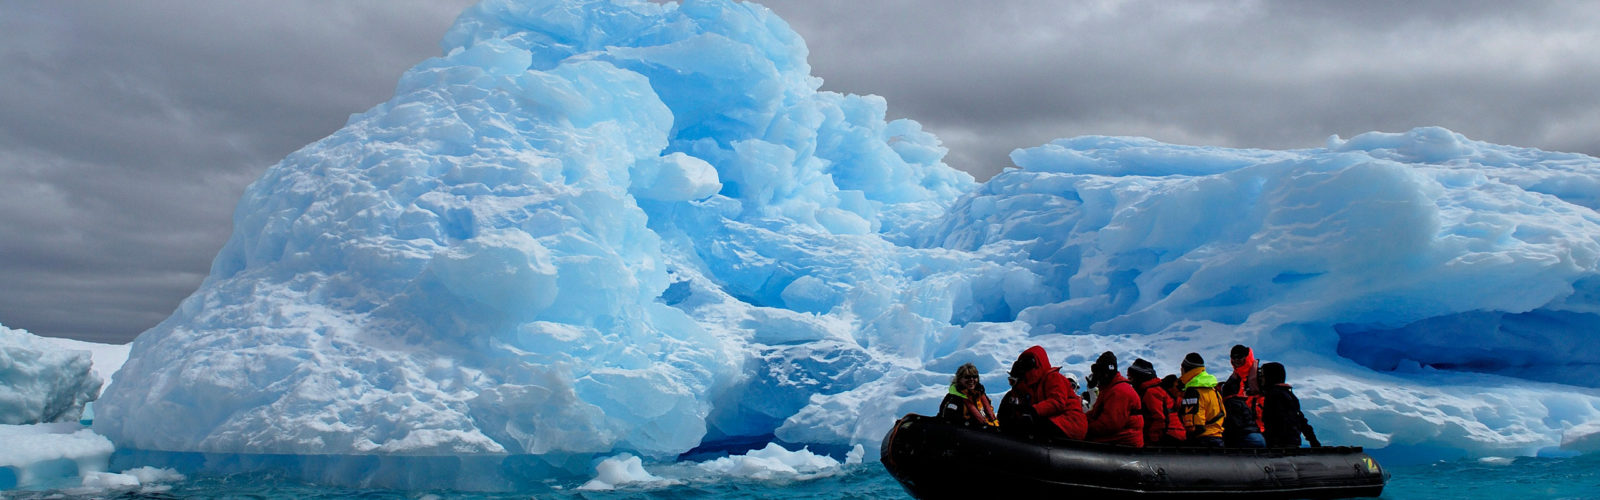 zodiac-boat-iceberg-antarctica